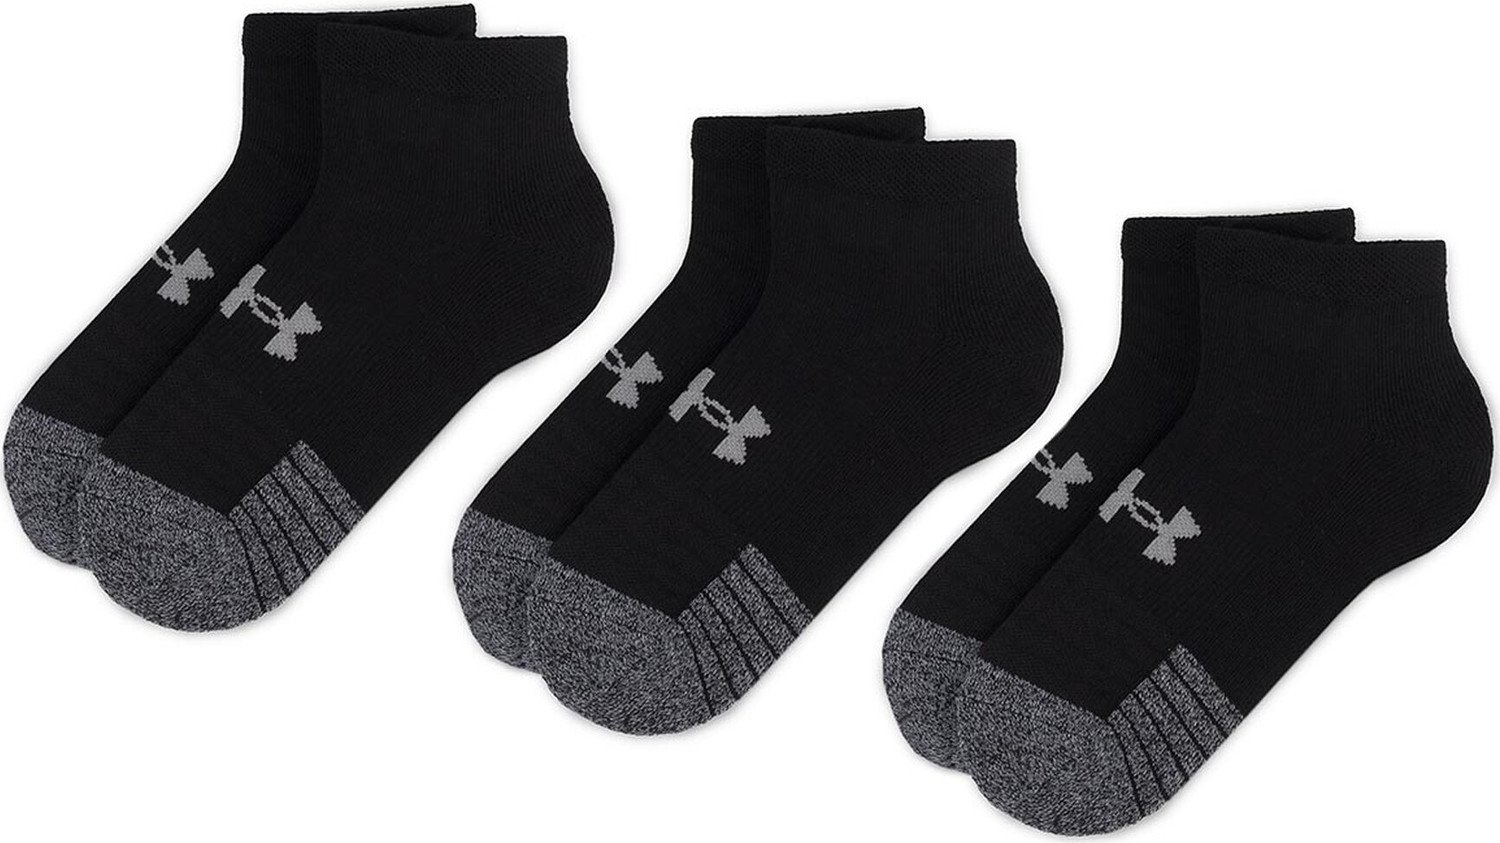 Sada 3 párů nízkých ponožek unisex Under Armour Heatgear Lo Cut Sock 1346753-001 Black